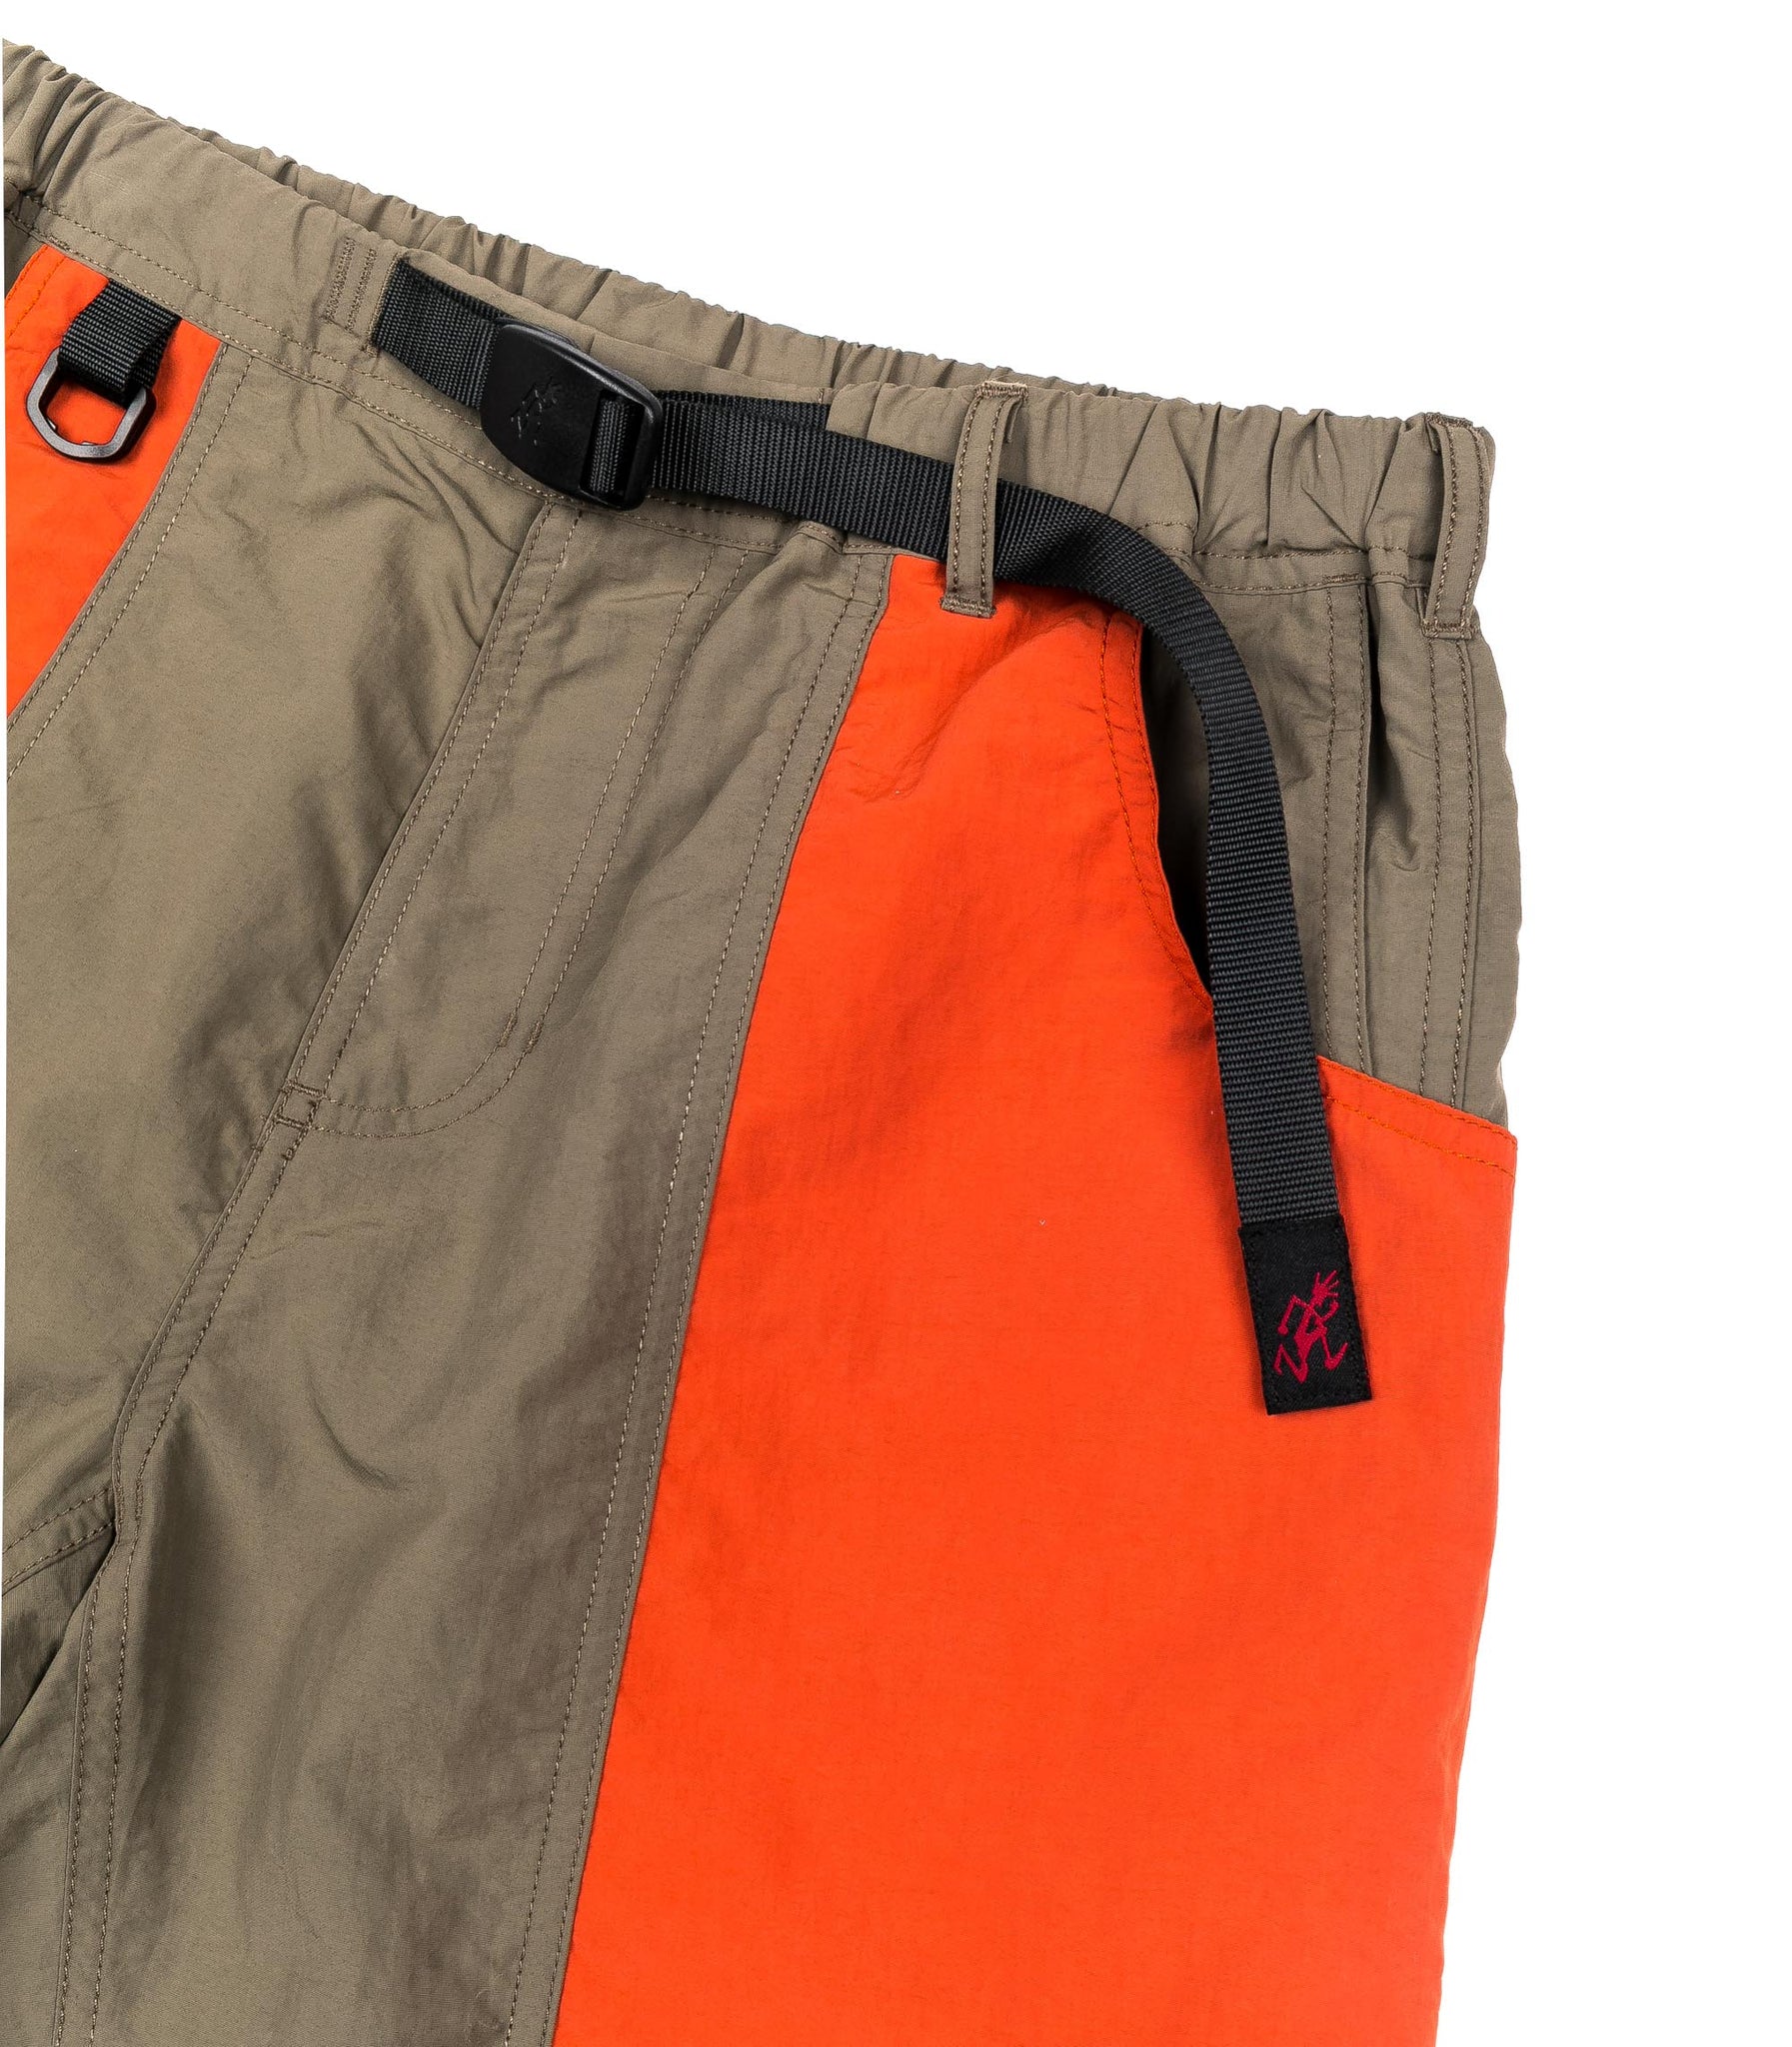 Gramicci Shell Gear Short Multicolor Lightweight Nylon Shorts Man